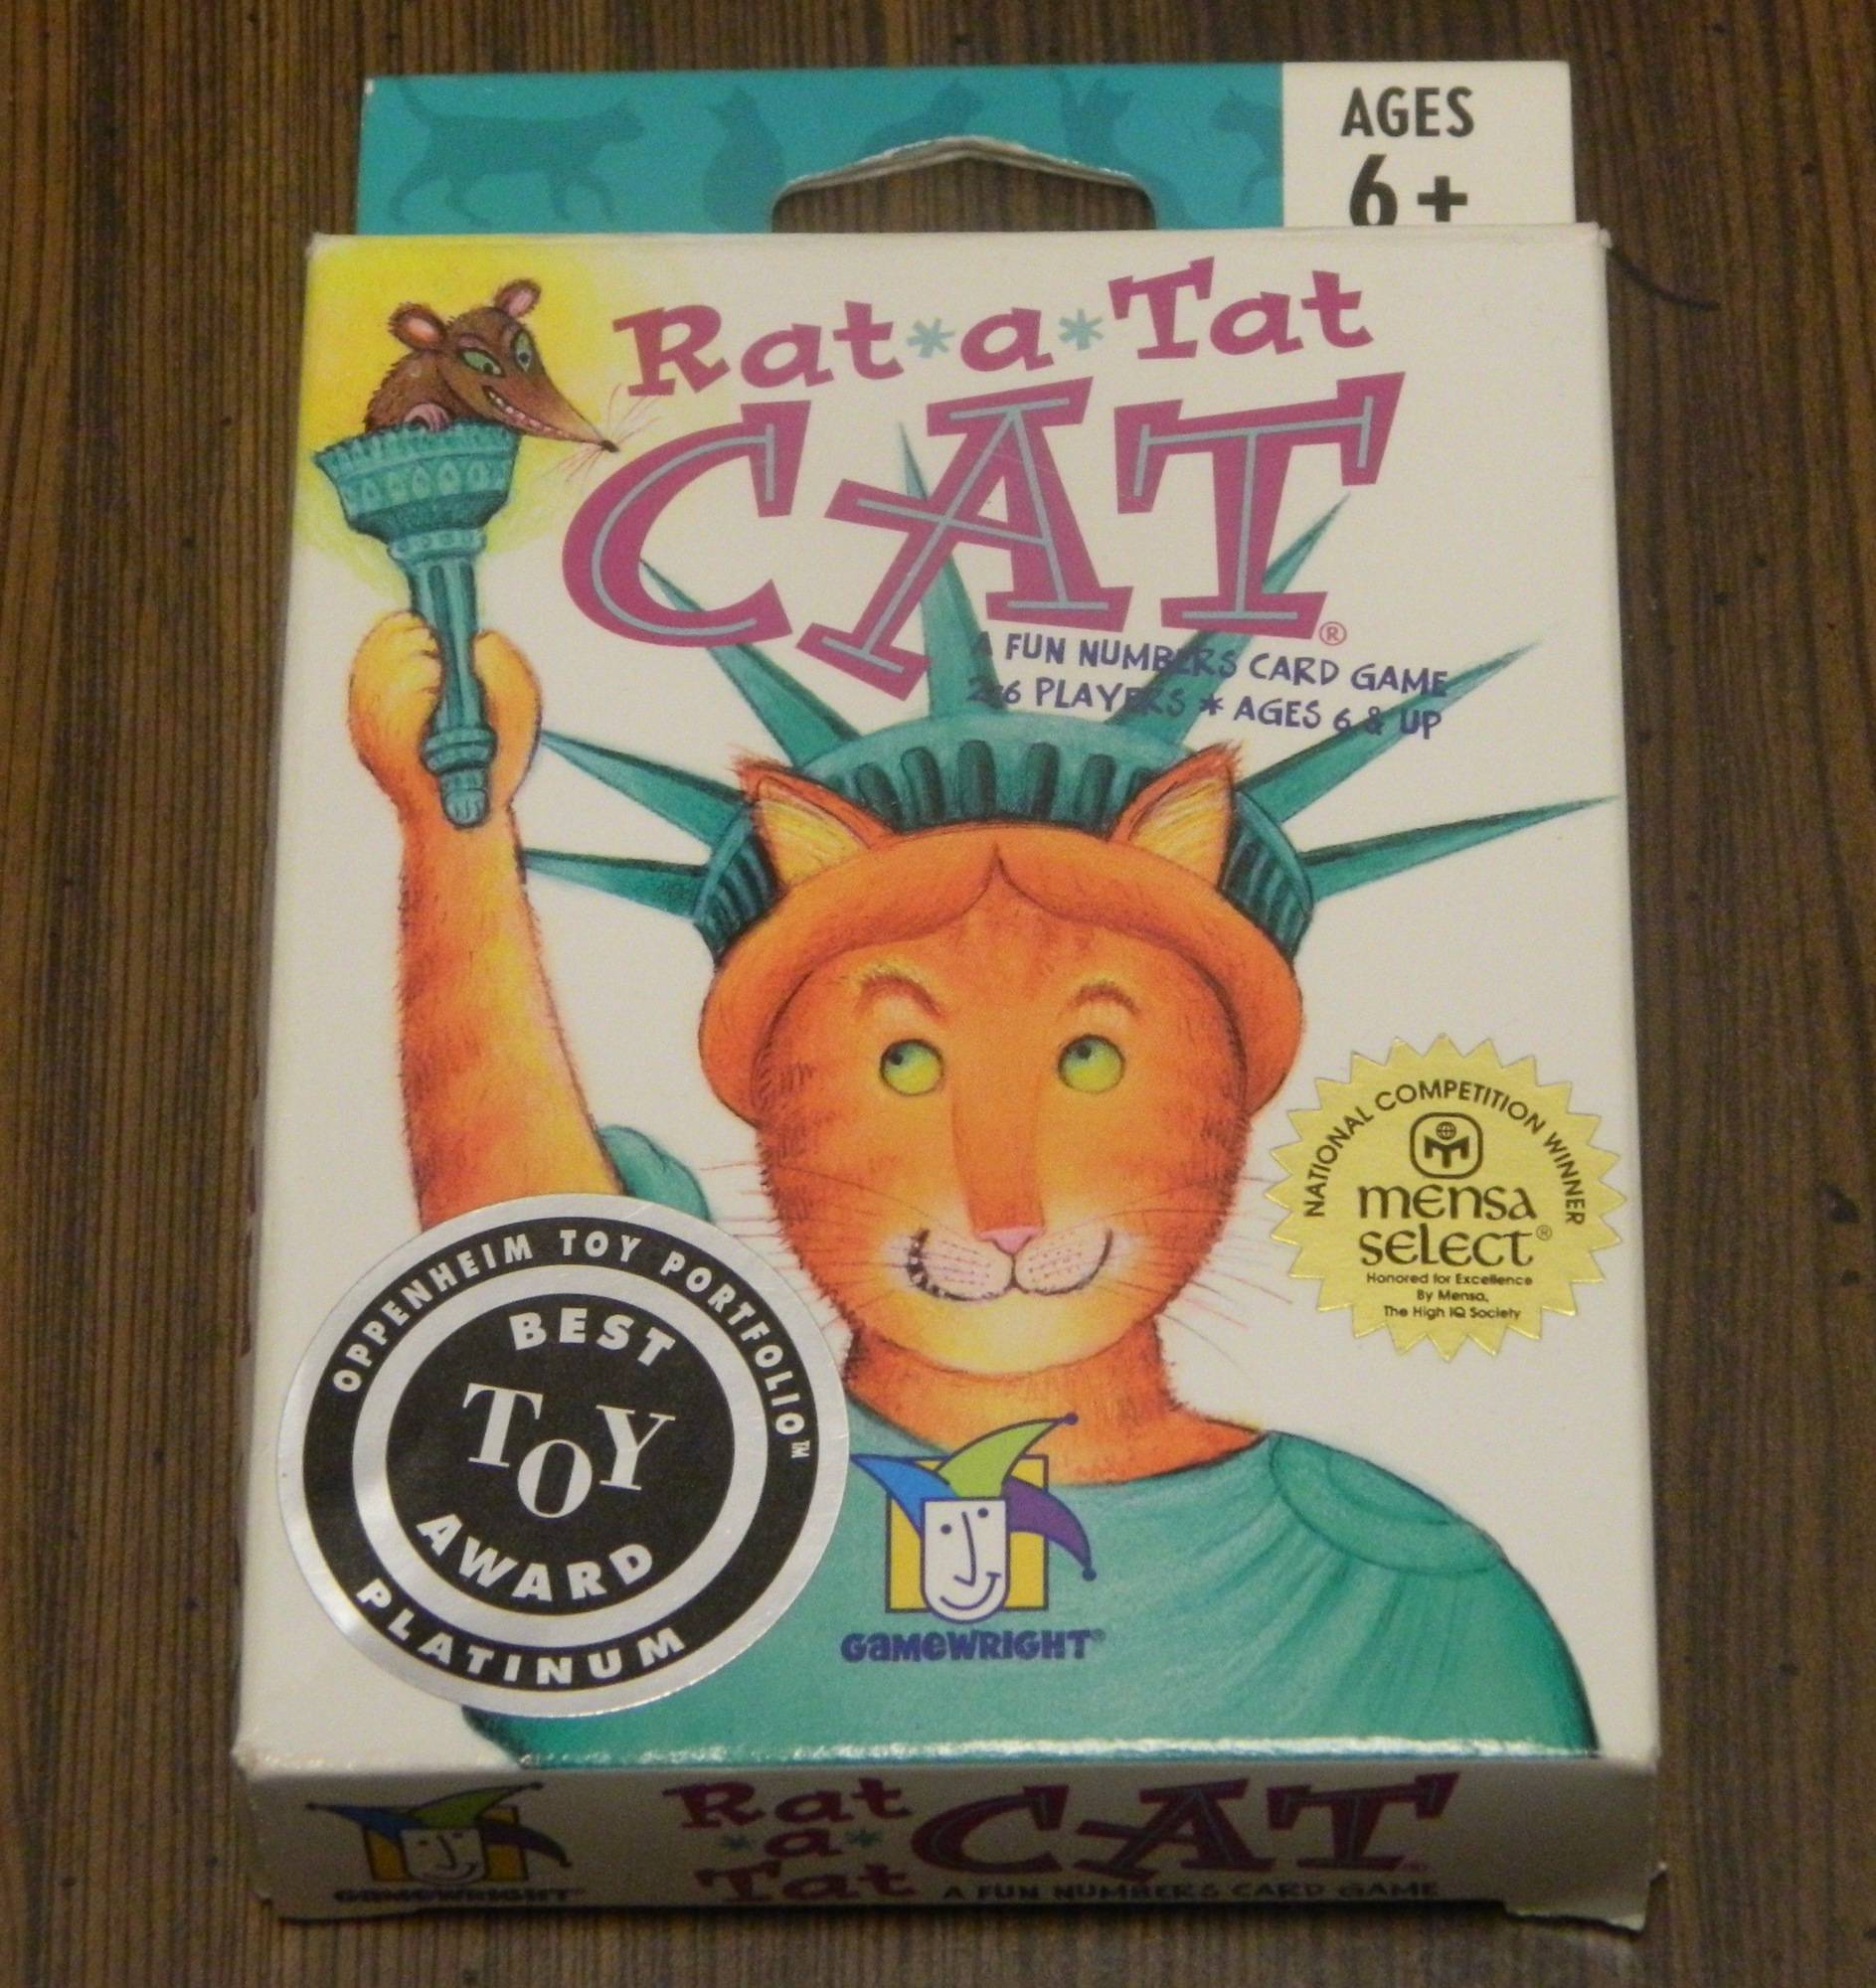 Rat-a-Tat Cat Card Game Review